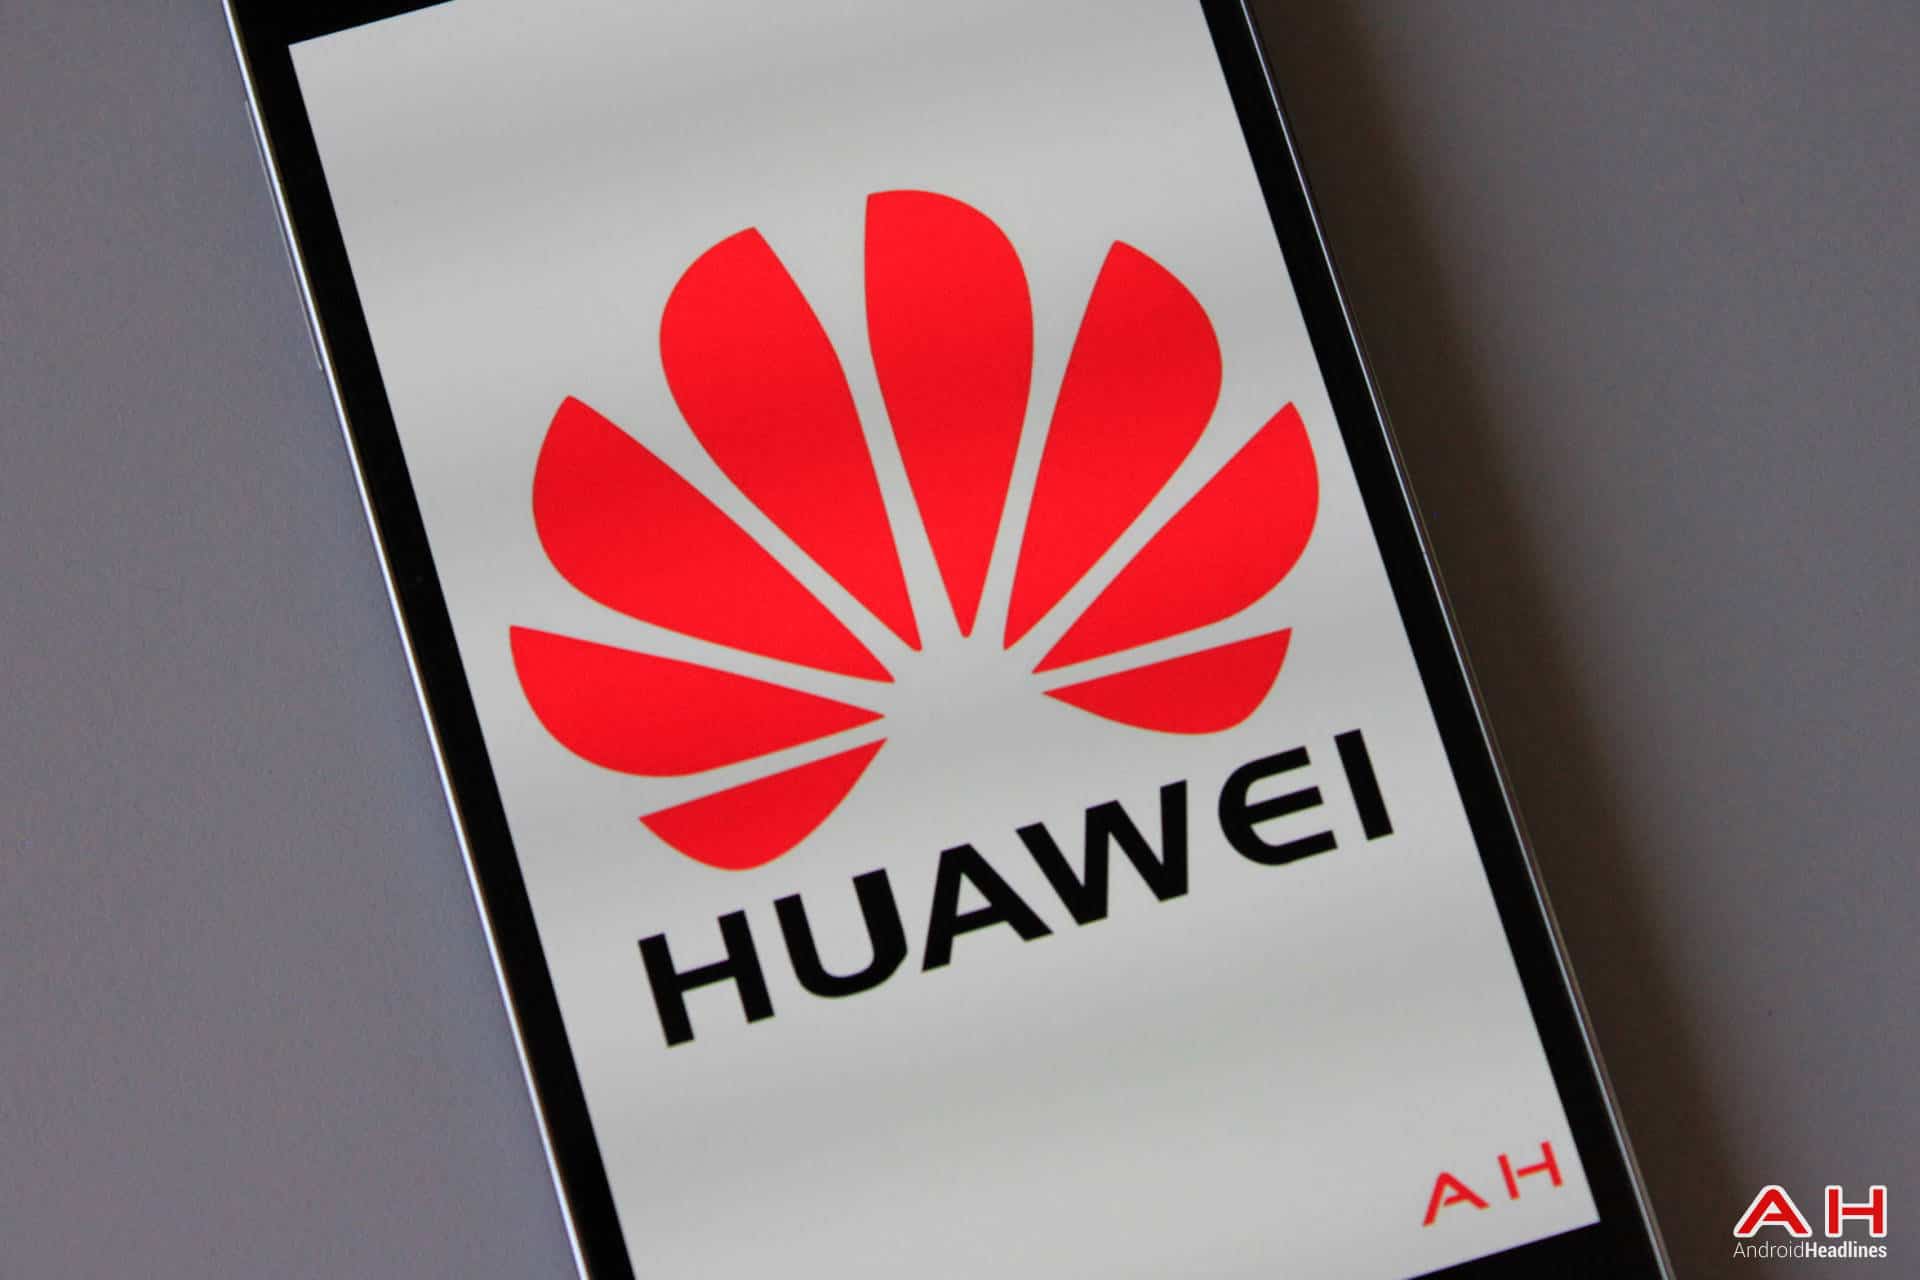 AH Huawei Logo 1.2